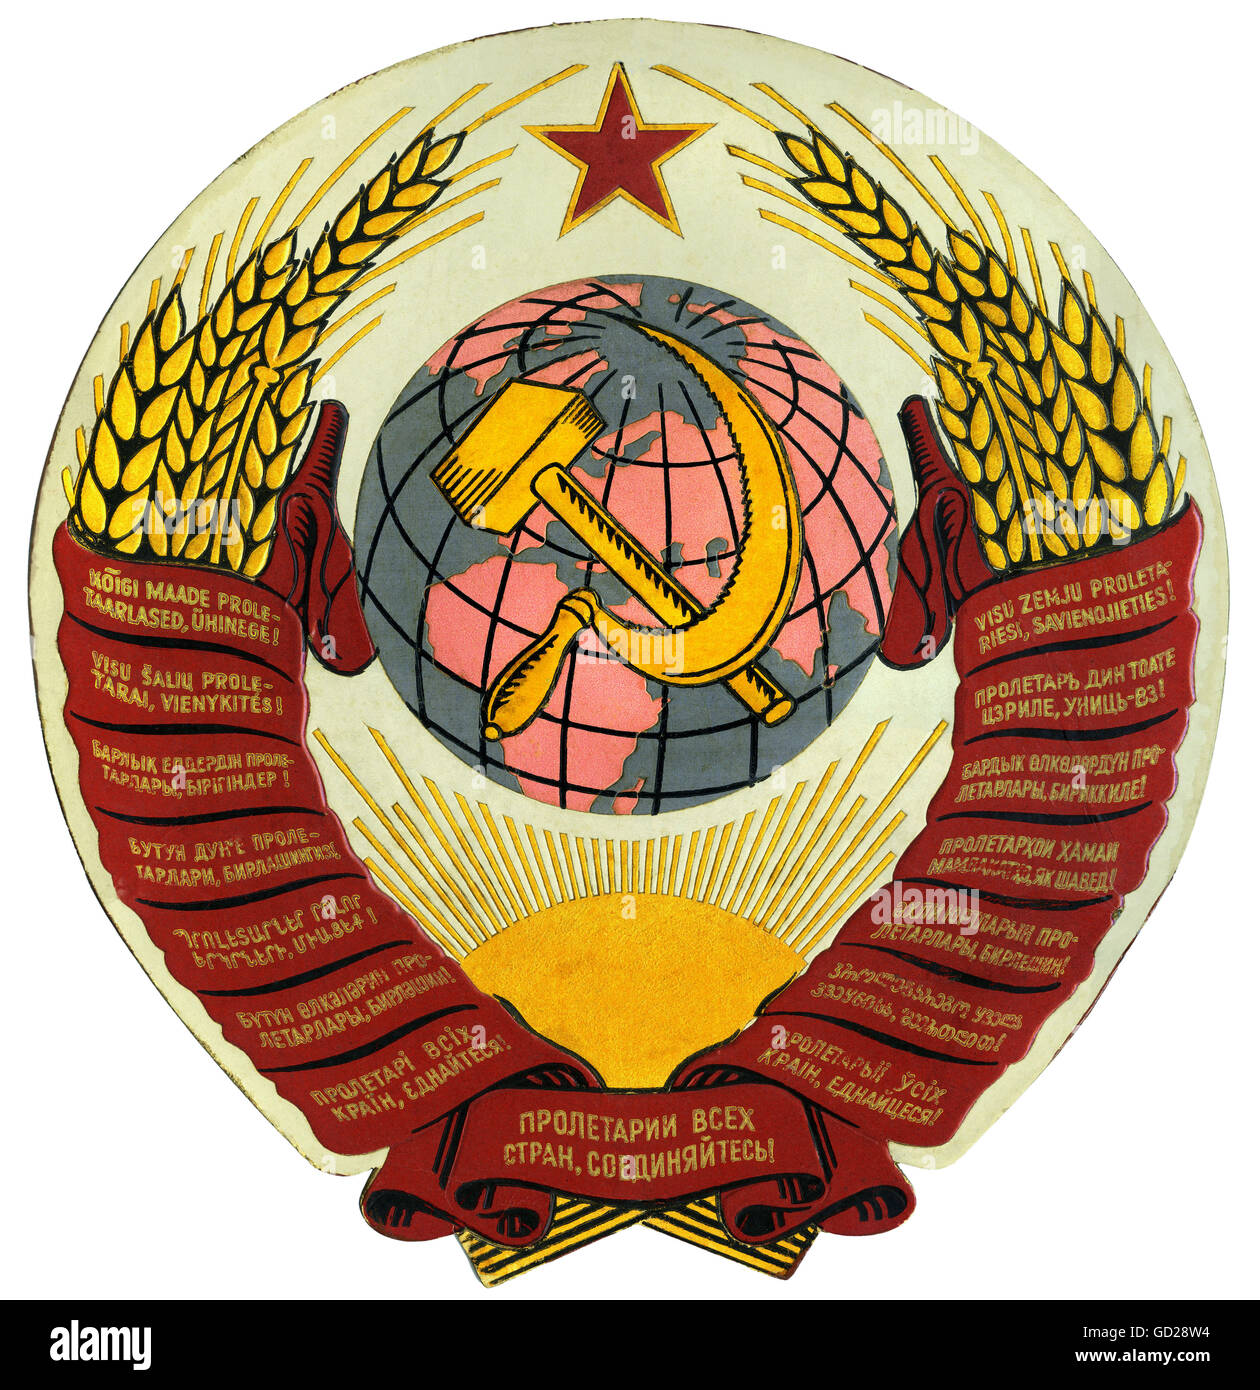 Heráldica, escudo de armas, escudo nacional de armas de la URSS, cartel de cartón en relieve, Unión Soviética, alrededor de 1953, Derechos adicionales-Clearences-no disponible Foto de stock